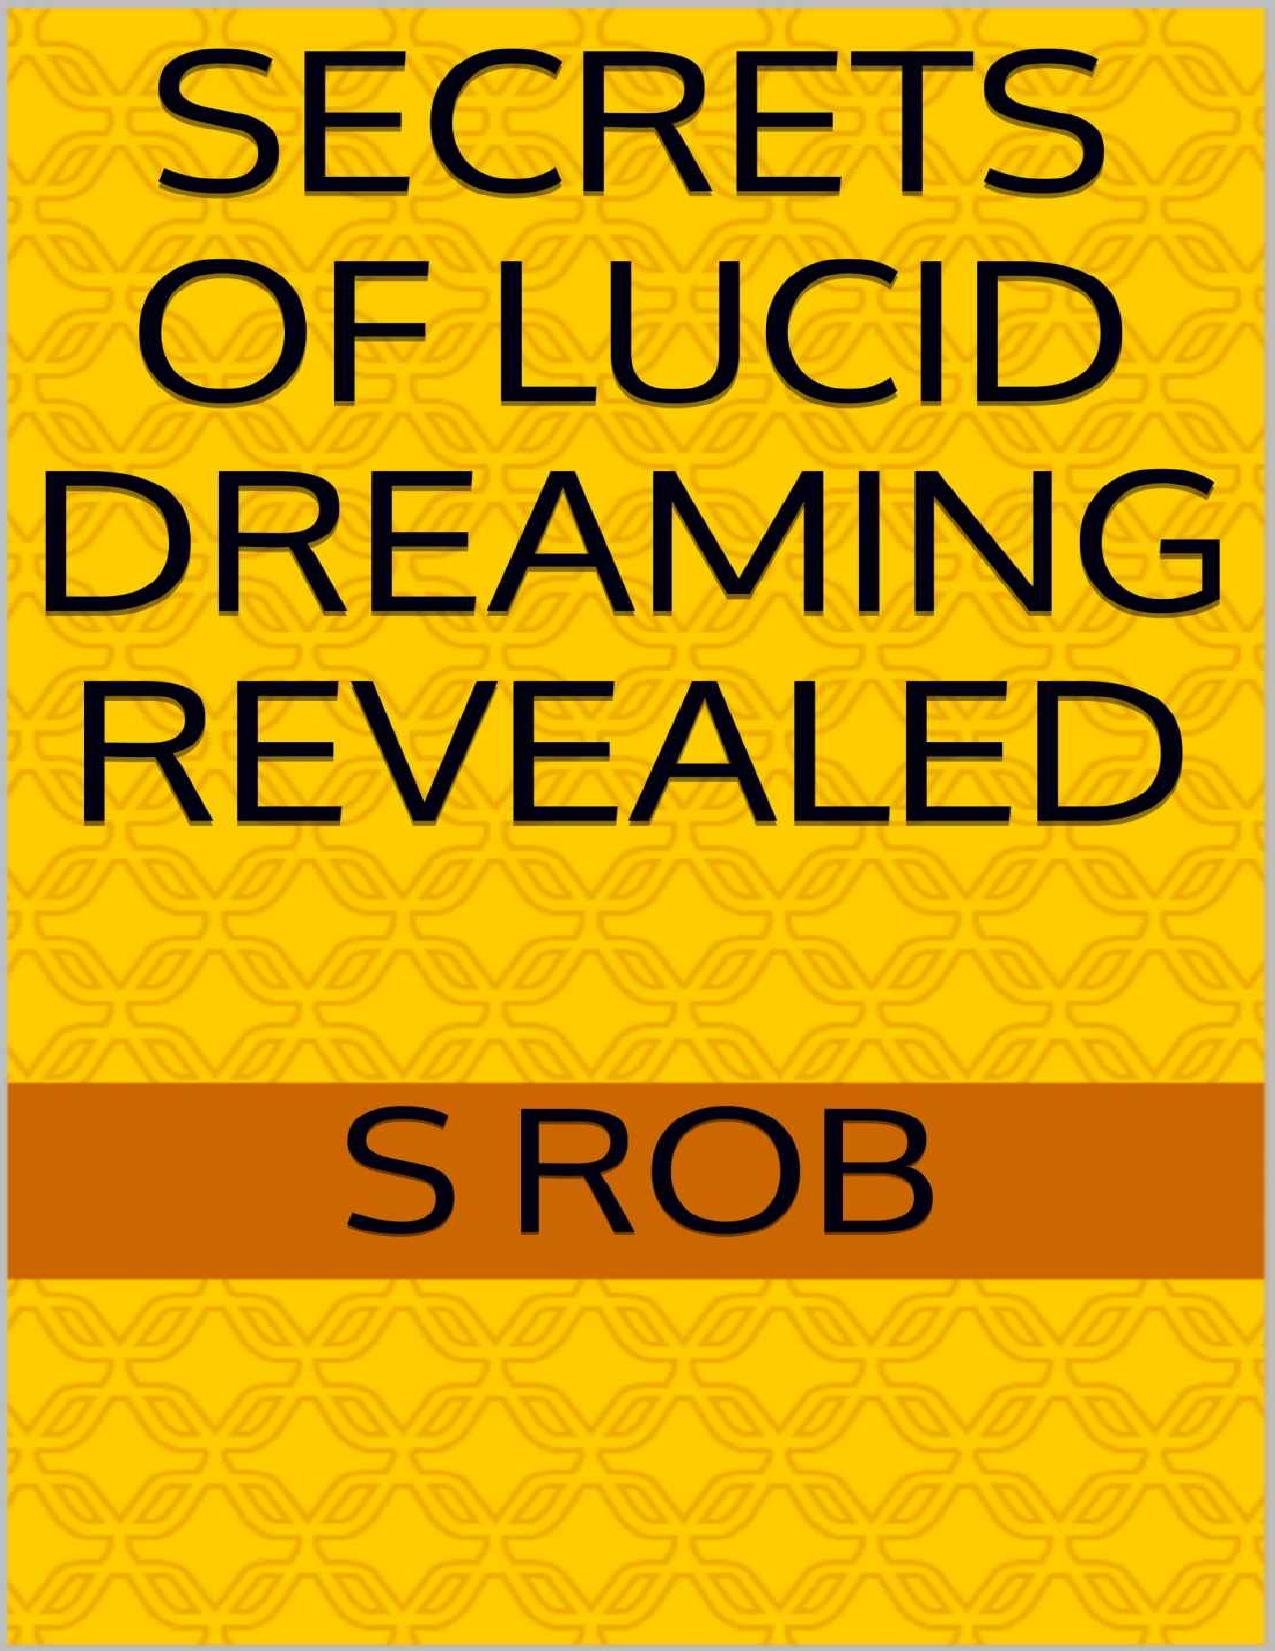 Secrets of lucid dreaming revealed